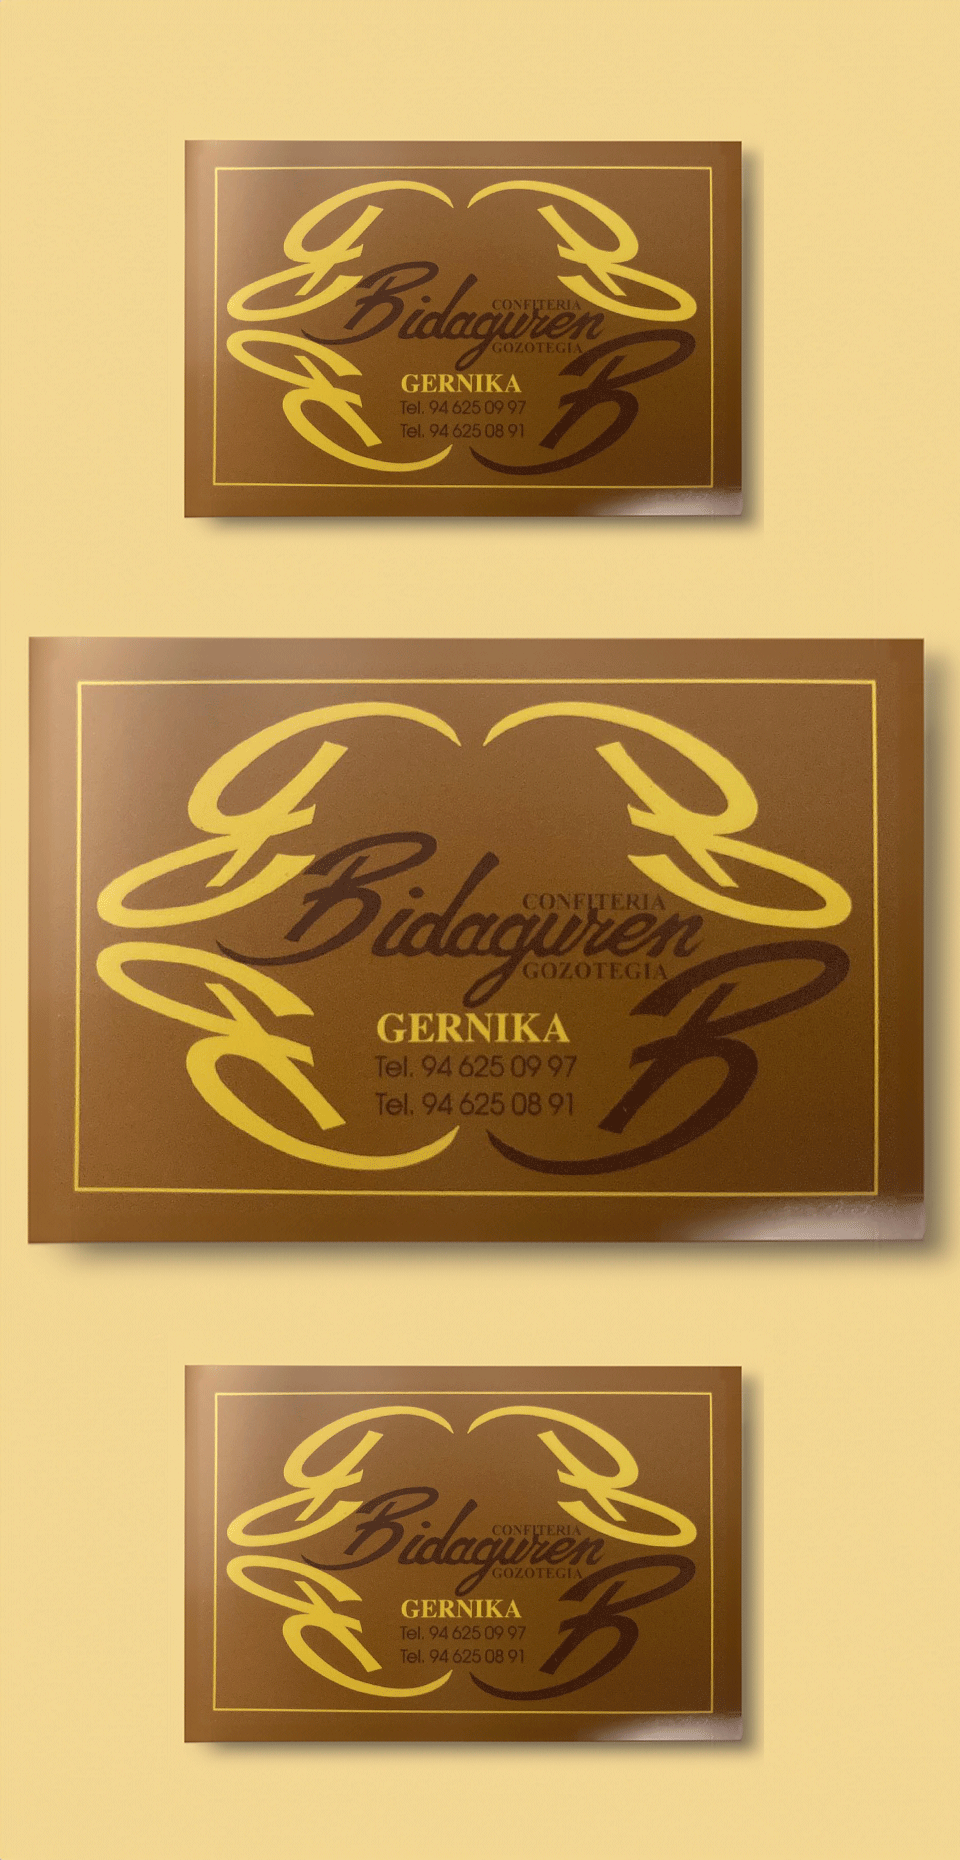 Banner de Bidaguren Gozotegia en Bilbao